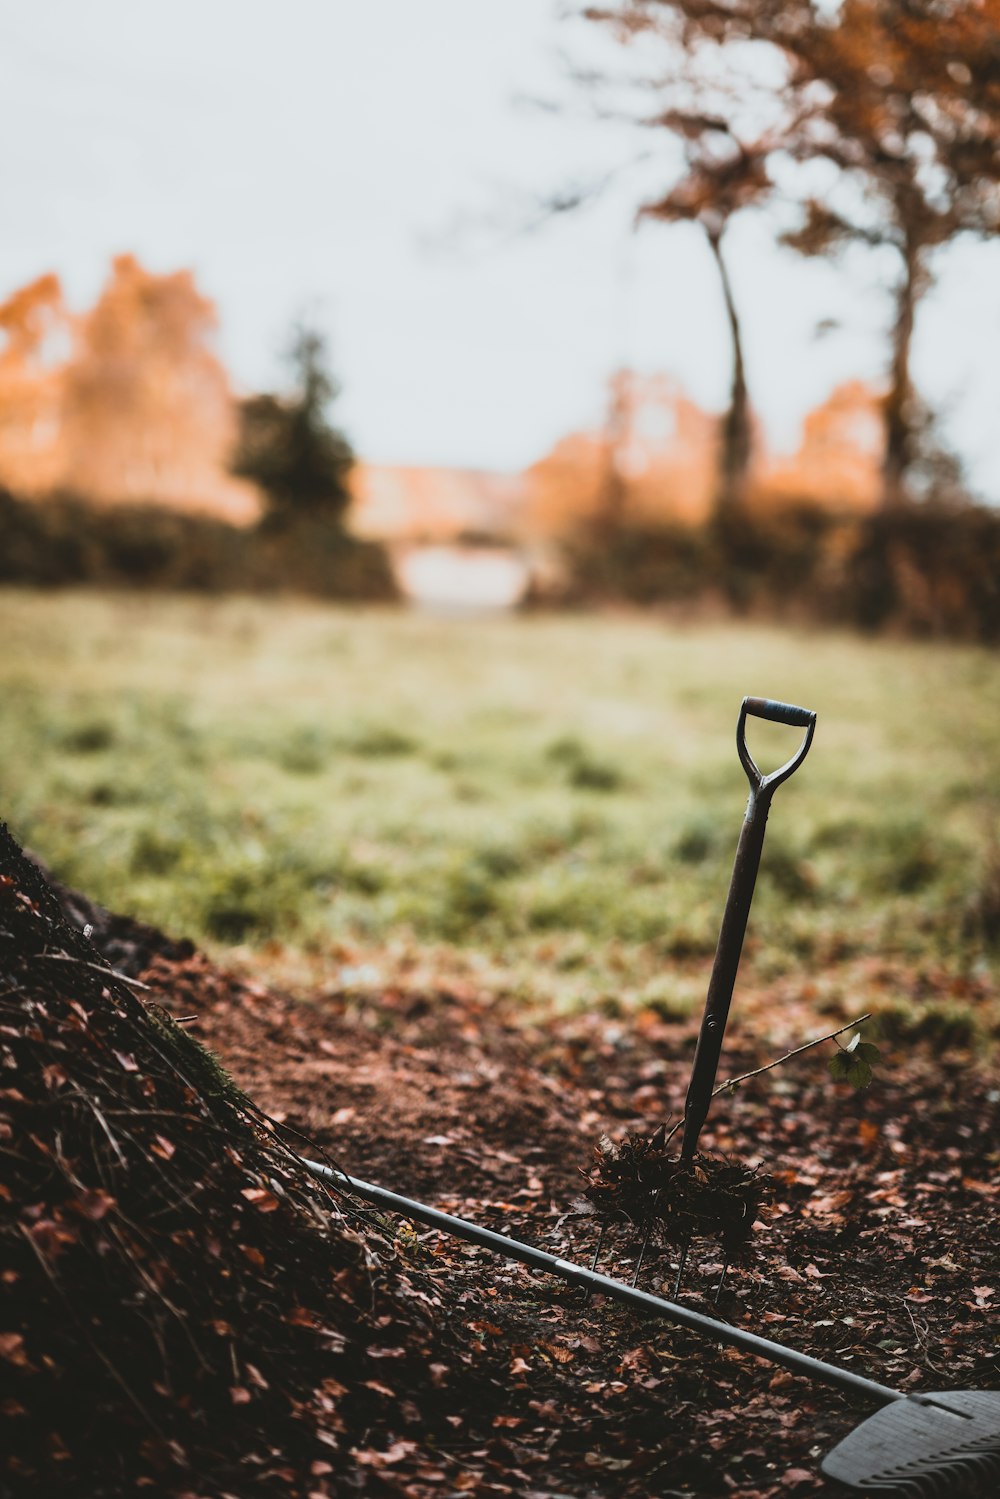 Photographie sélective de mise au point de l’outil de jardinage sur un sol brun